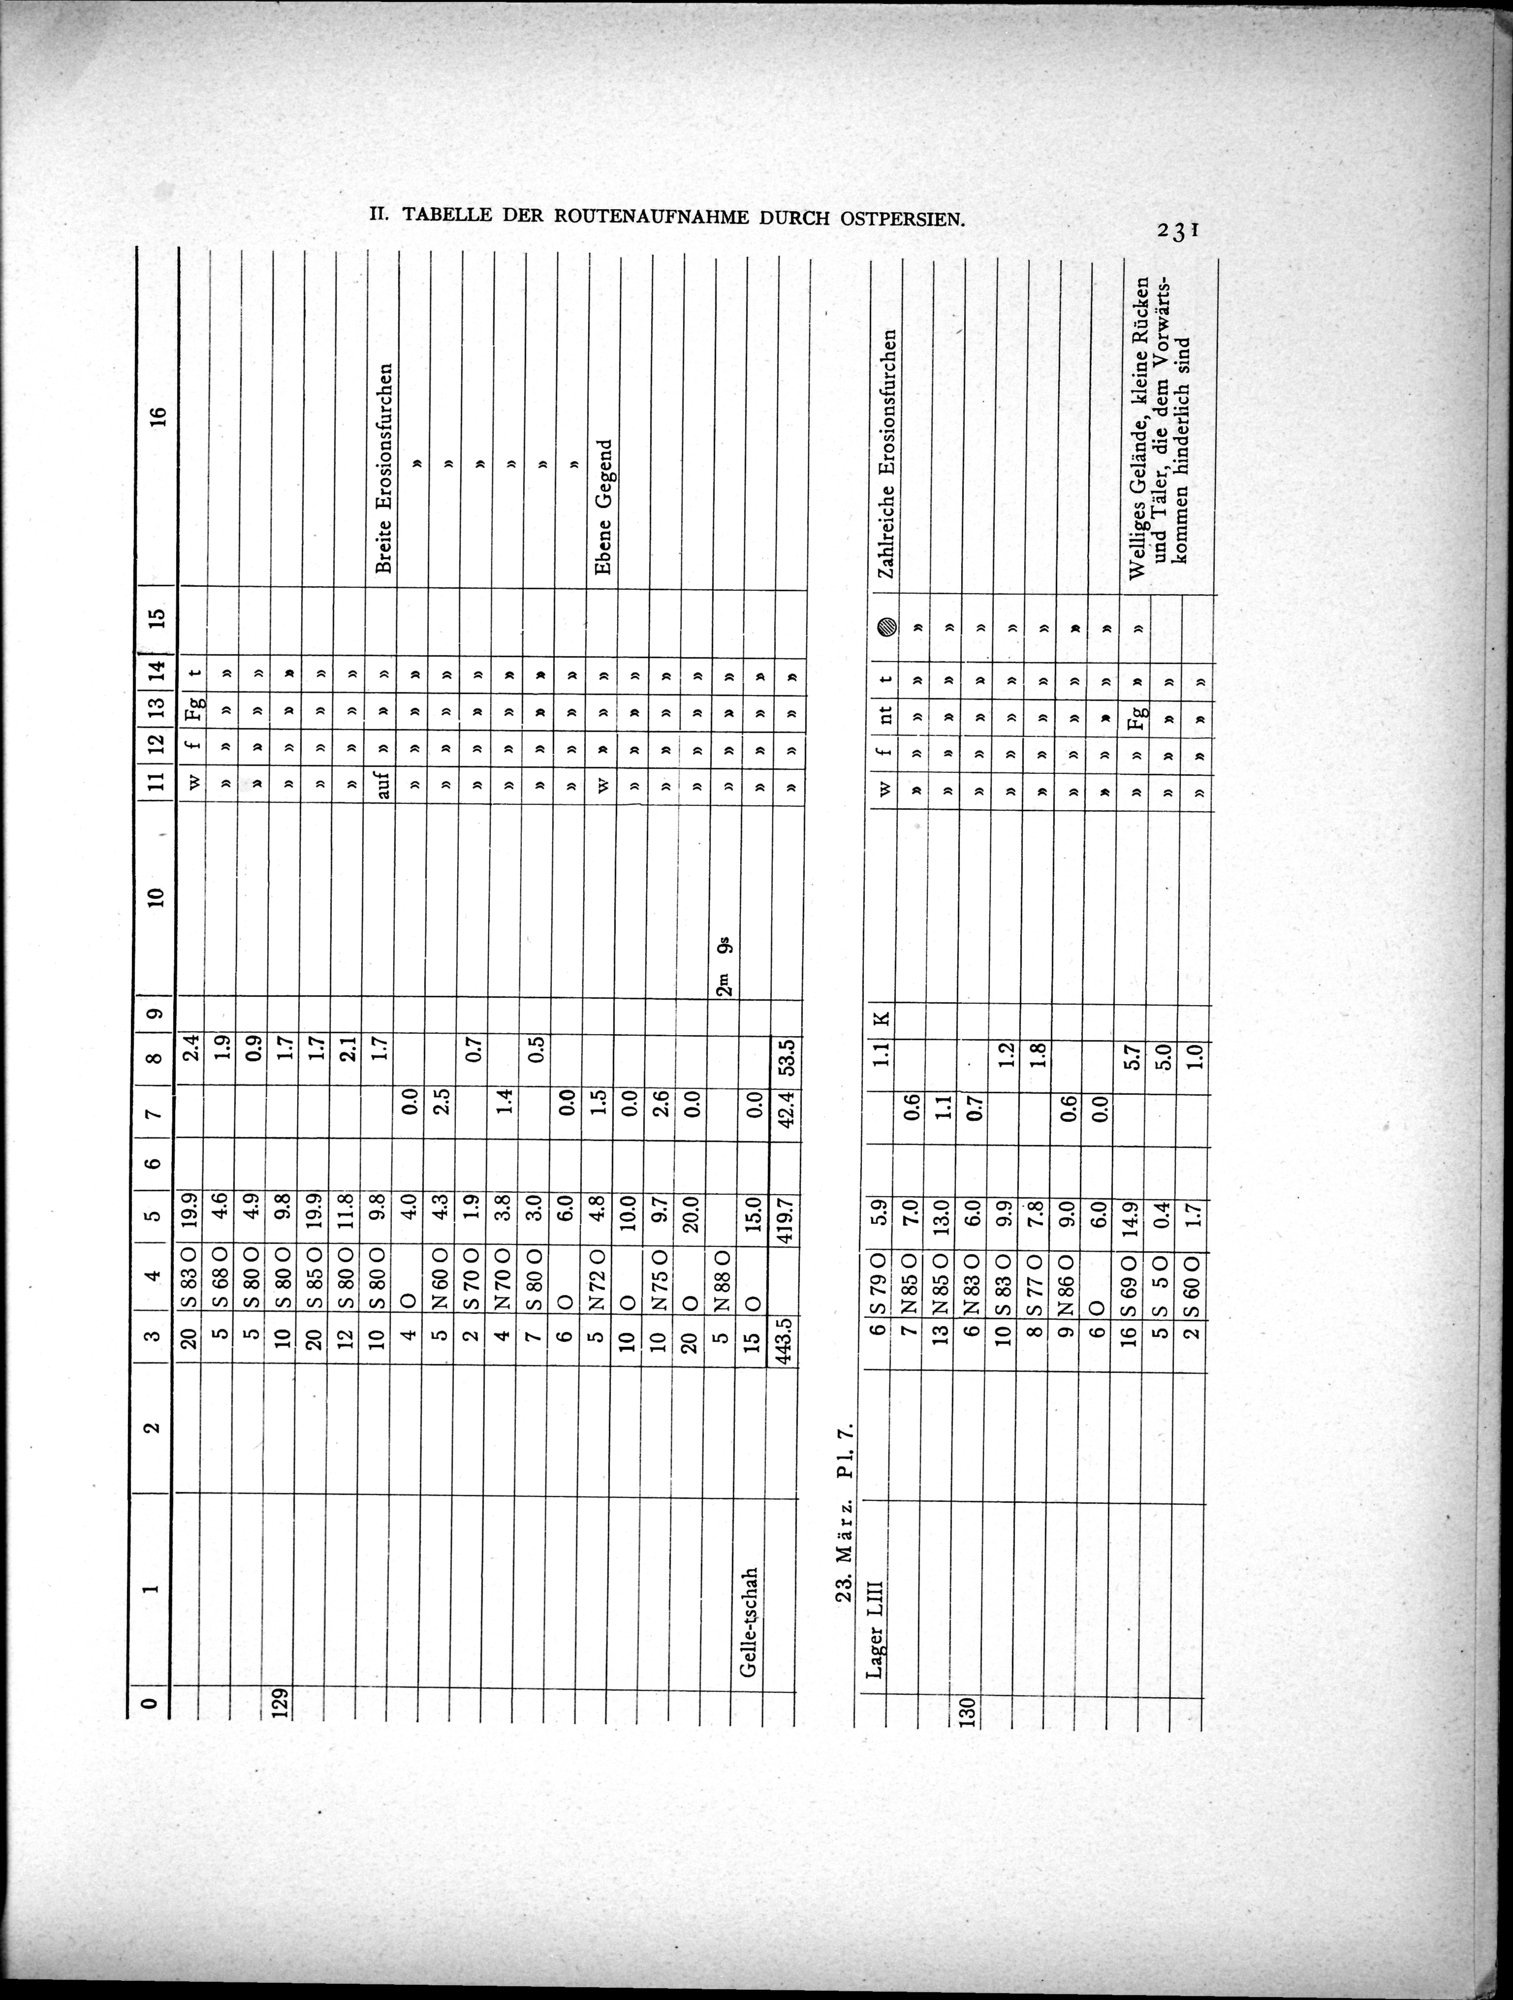 Eine Routenaufnahme durch Ostpersien : vol.2 / Page 301 (Grayscale High Resolution Image)